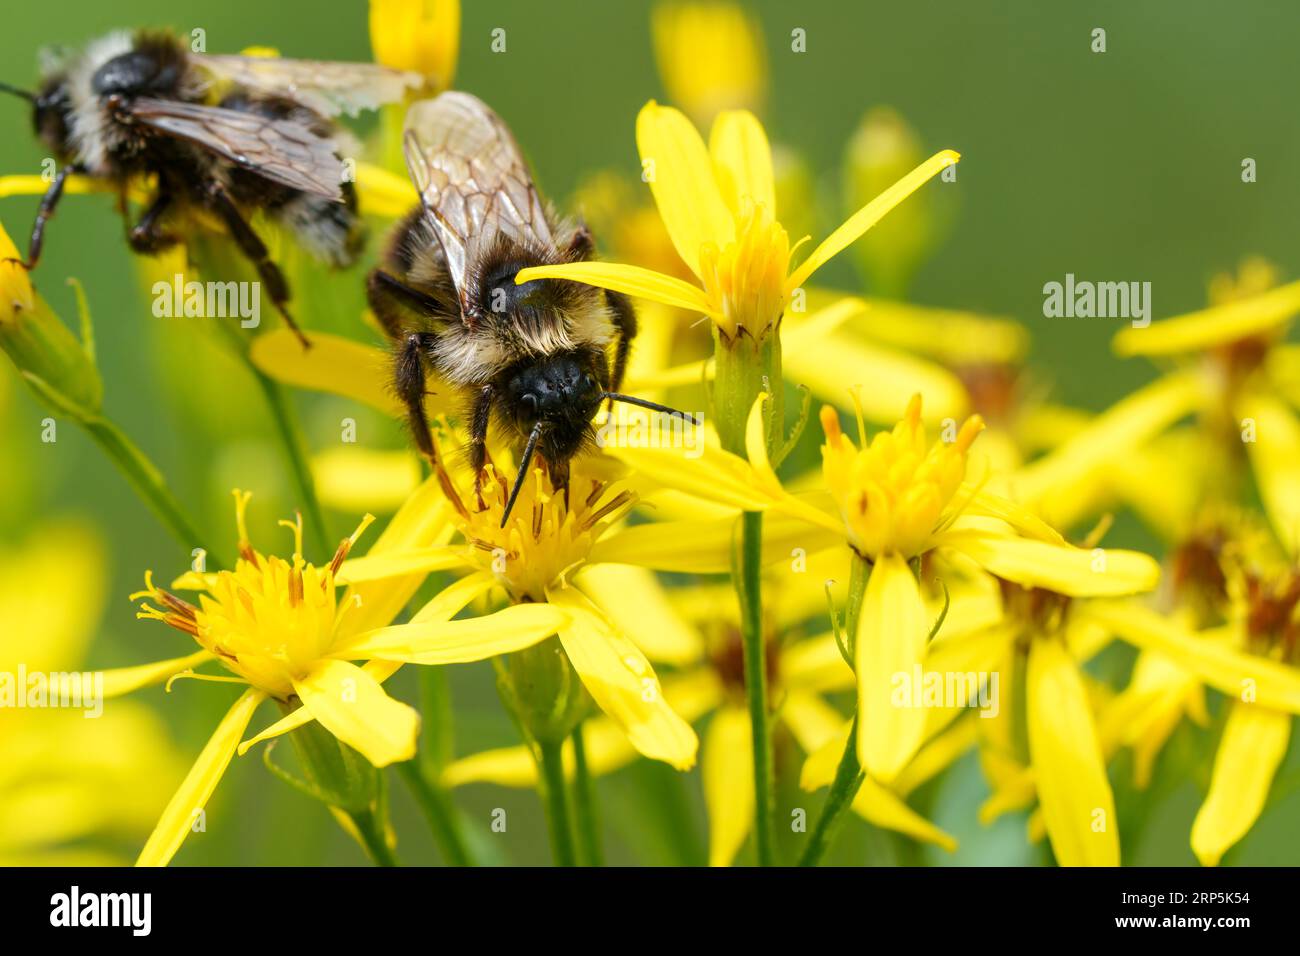 Gros plan coloré sur un Bumblebee de Cuckoo de Bohême, Bombus bohemicus, assis sur une fleur jaune Banque D'Images